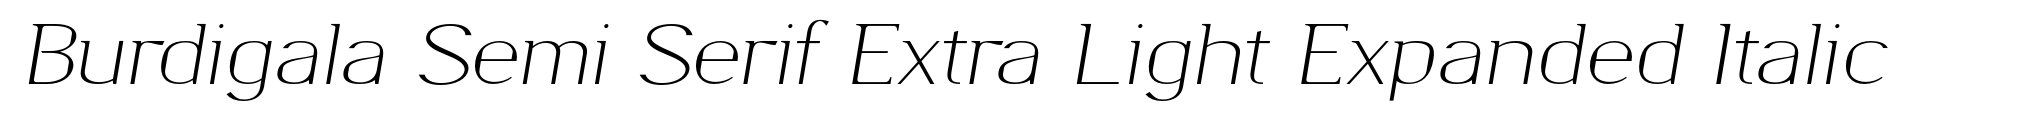 Burdigala Semi Serif Extra Light Expanded Italic image